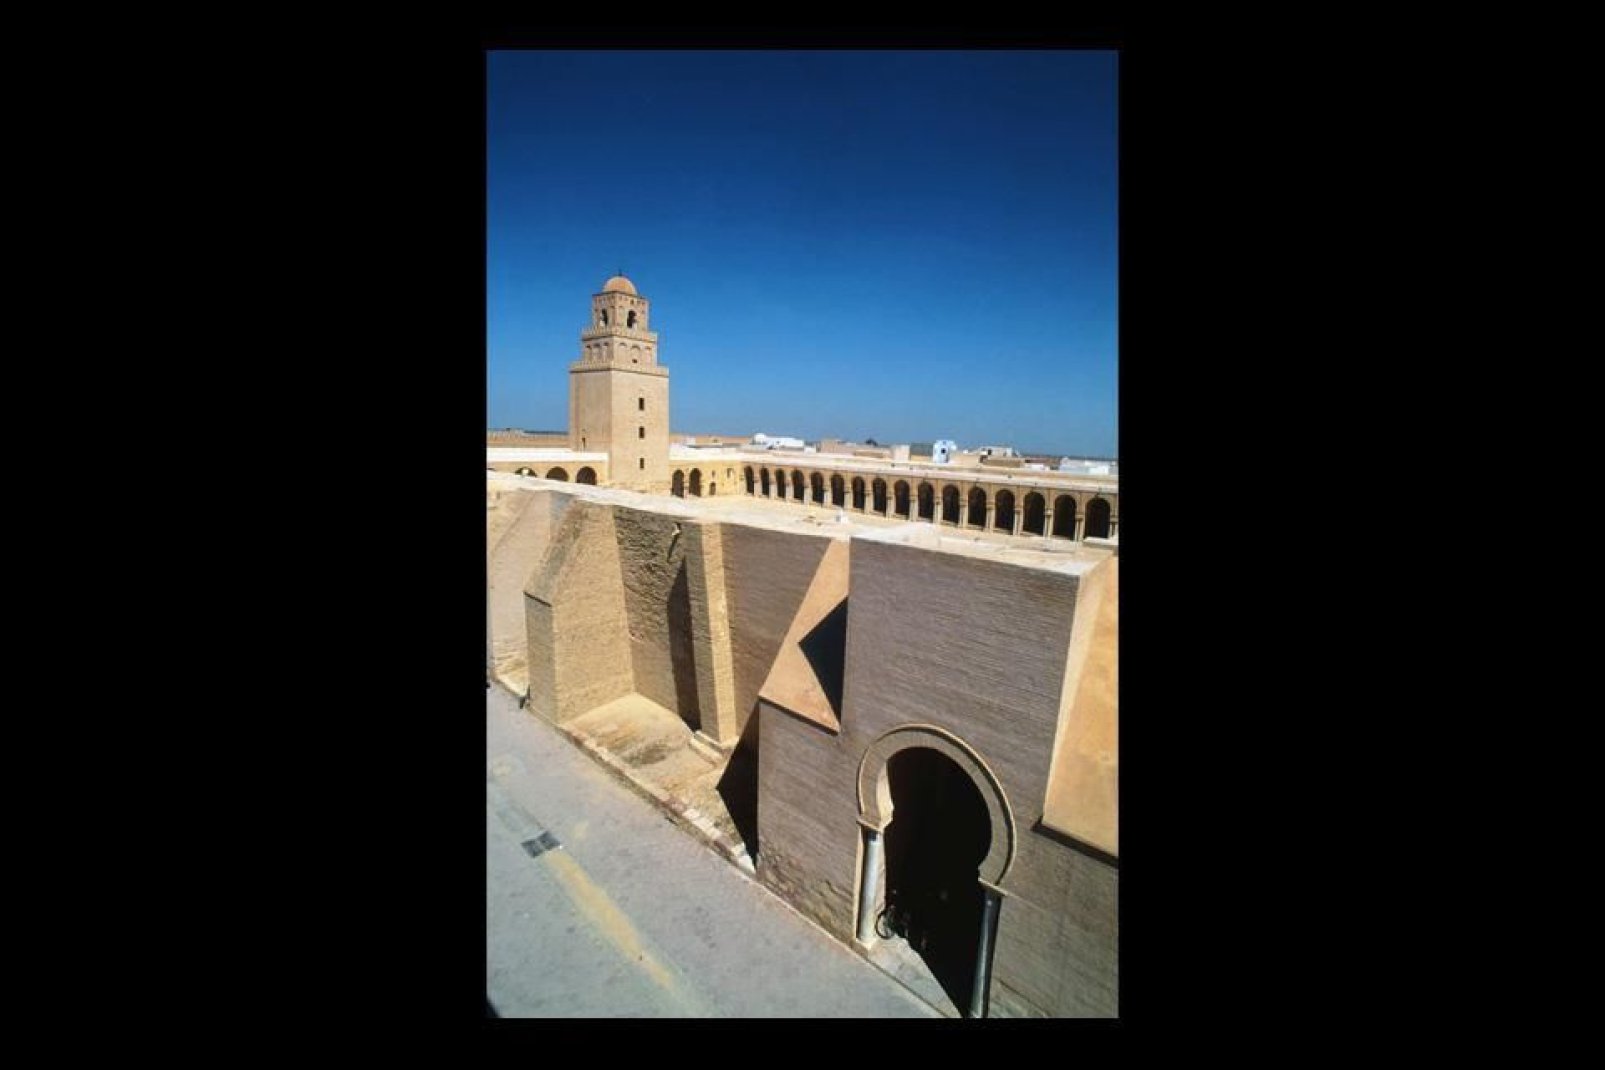 La gran mezquita, una obra maestra de la arquitectura, ha inspirado numerosas otras mezquitas de la región.